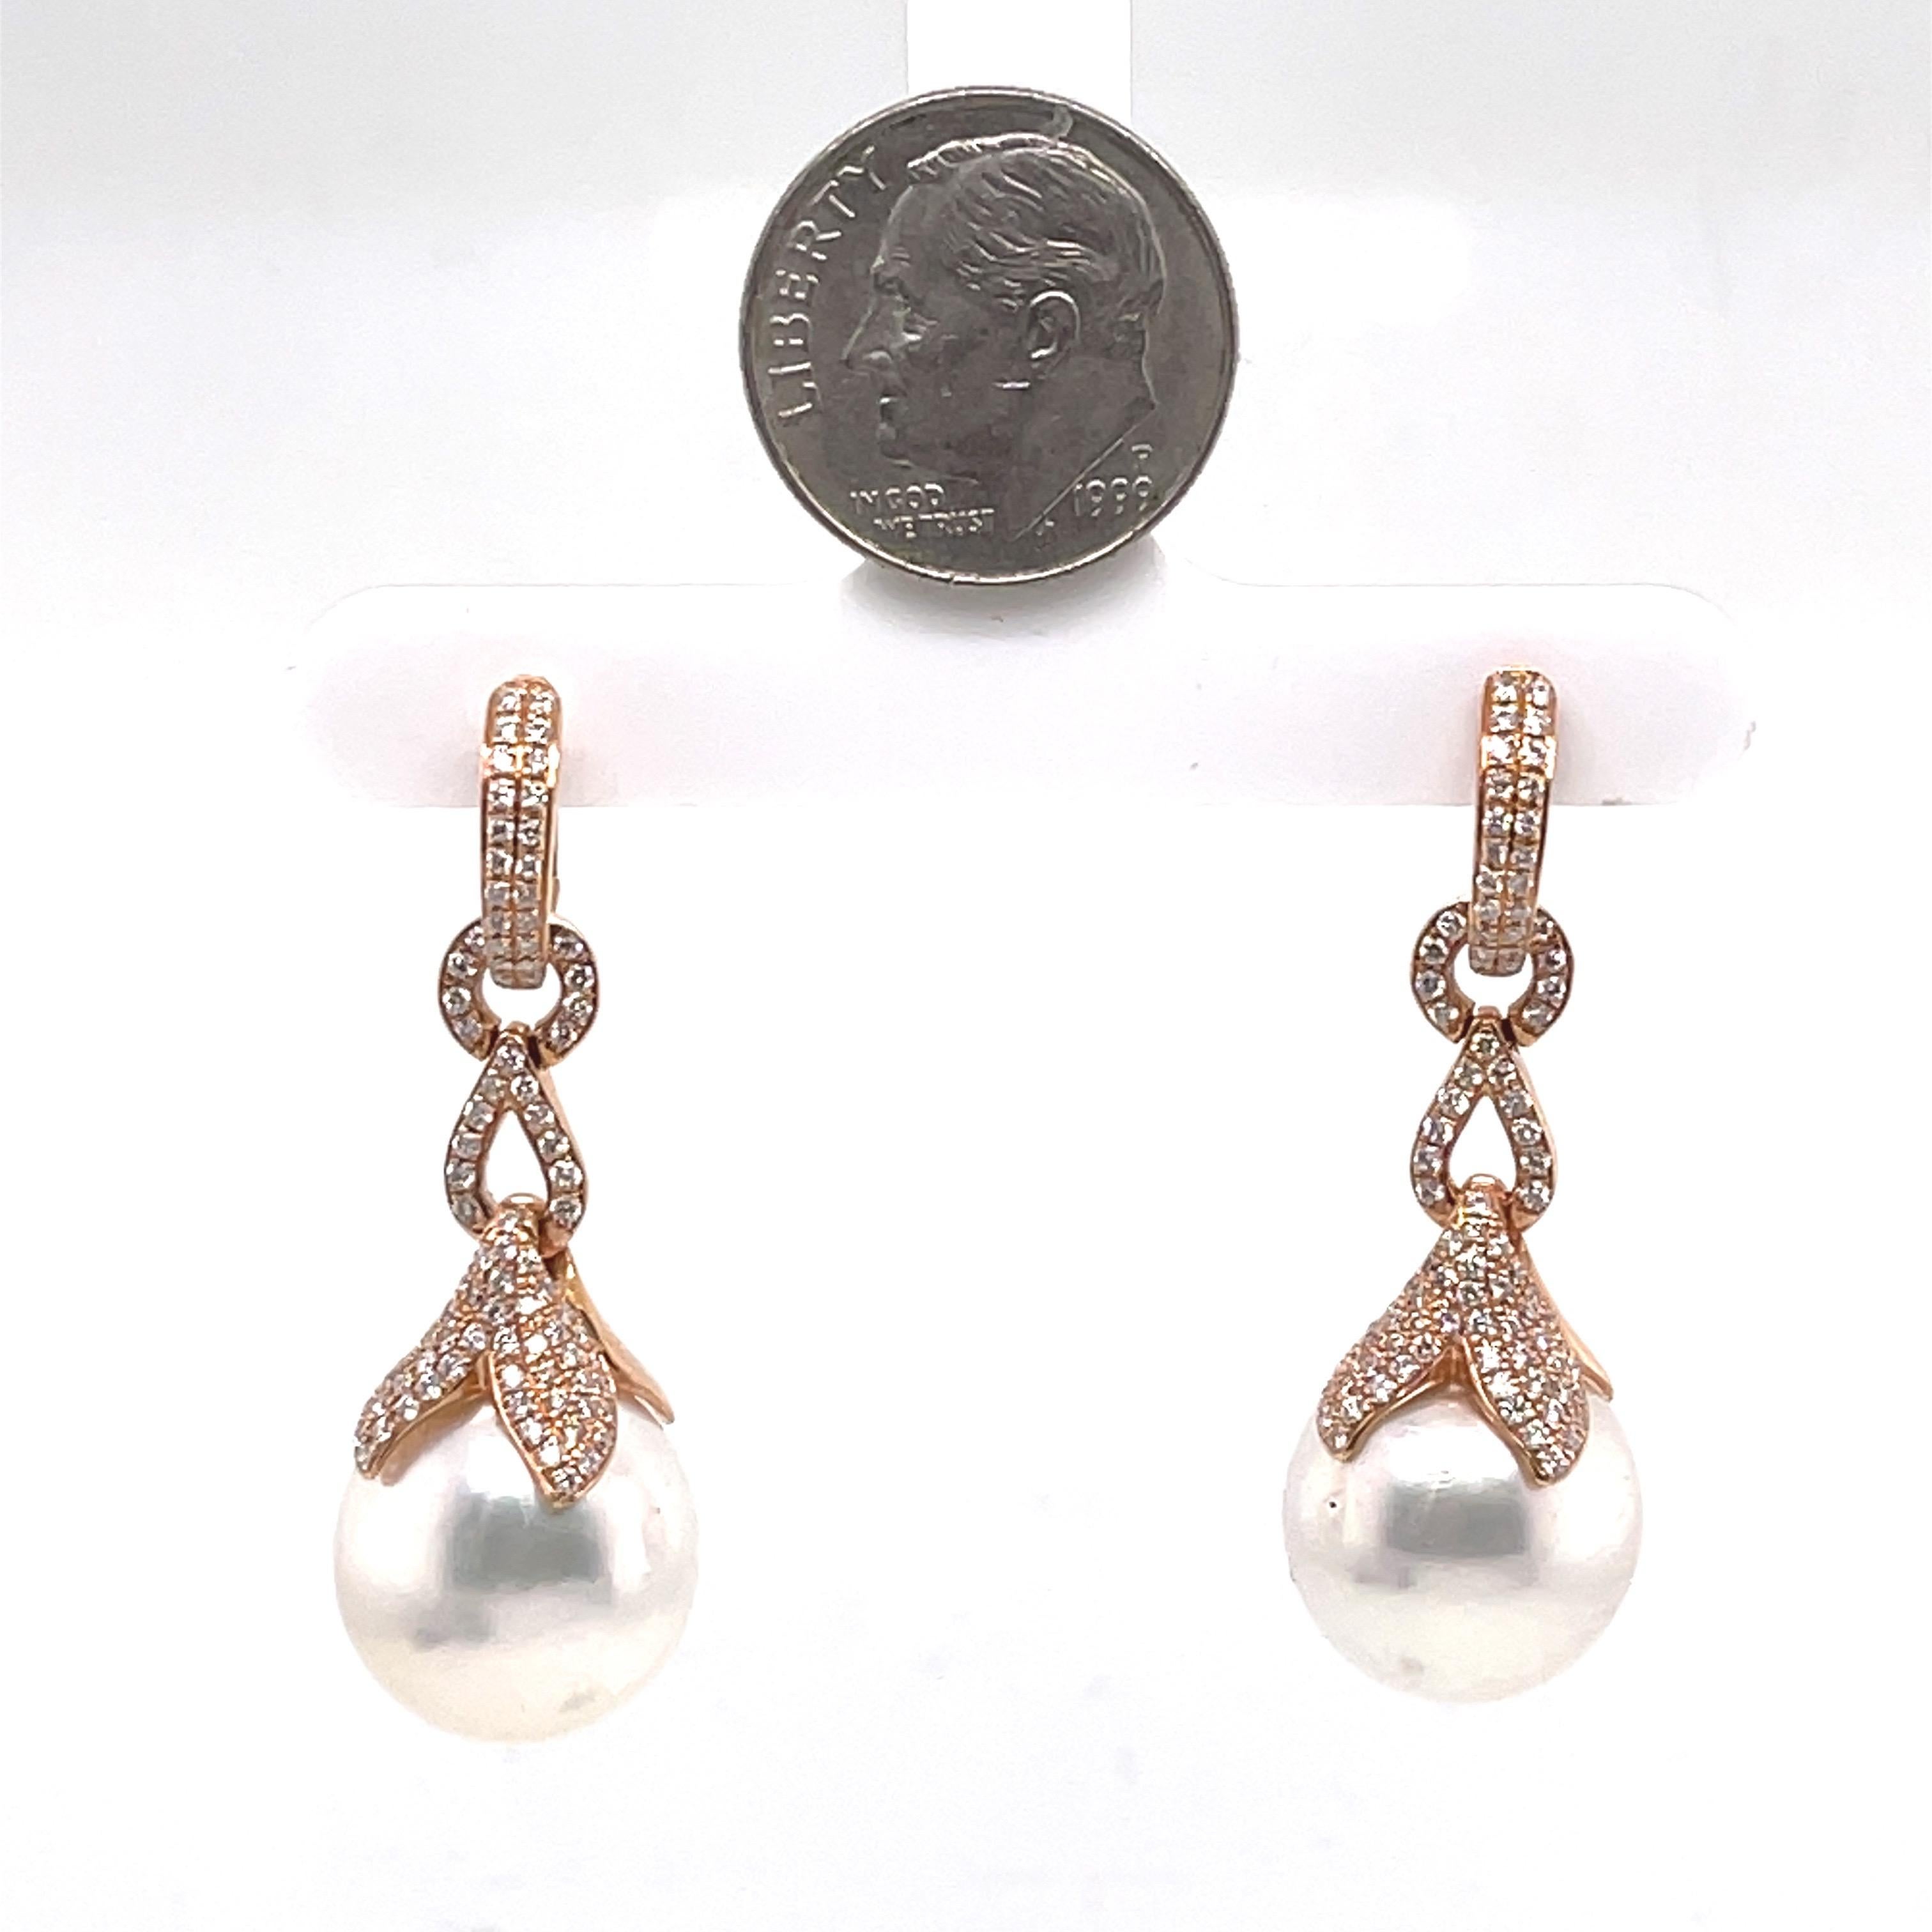 18K Rose Gold 8Gramm
81CT Diamanten
13-14mm Perle
Riegel zurück
Der Ohrring ist abnehmbar und kann als Tropfenohrring oder Diamantring getragen werden.